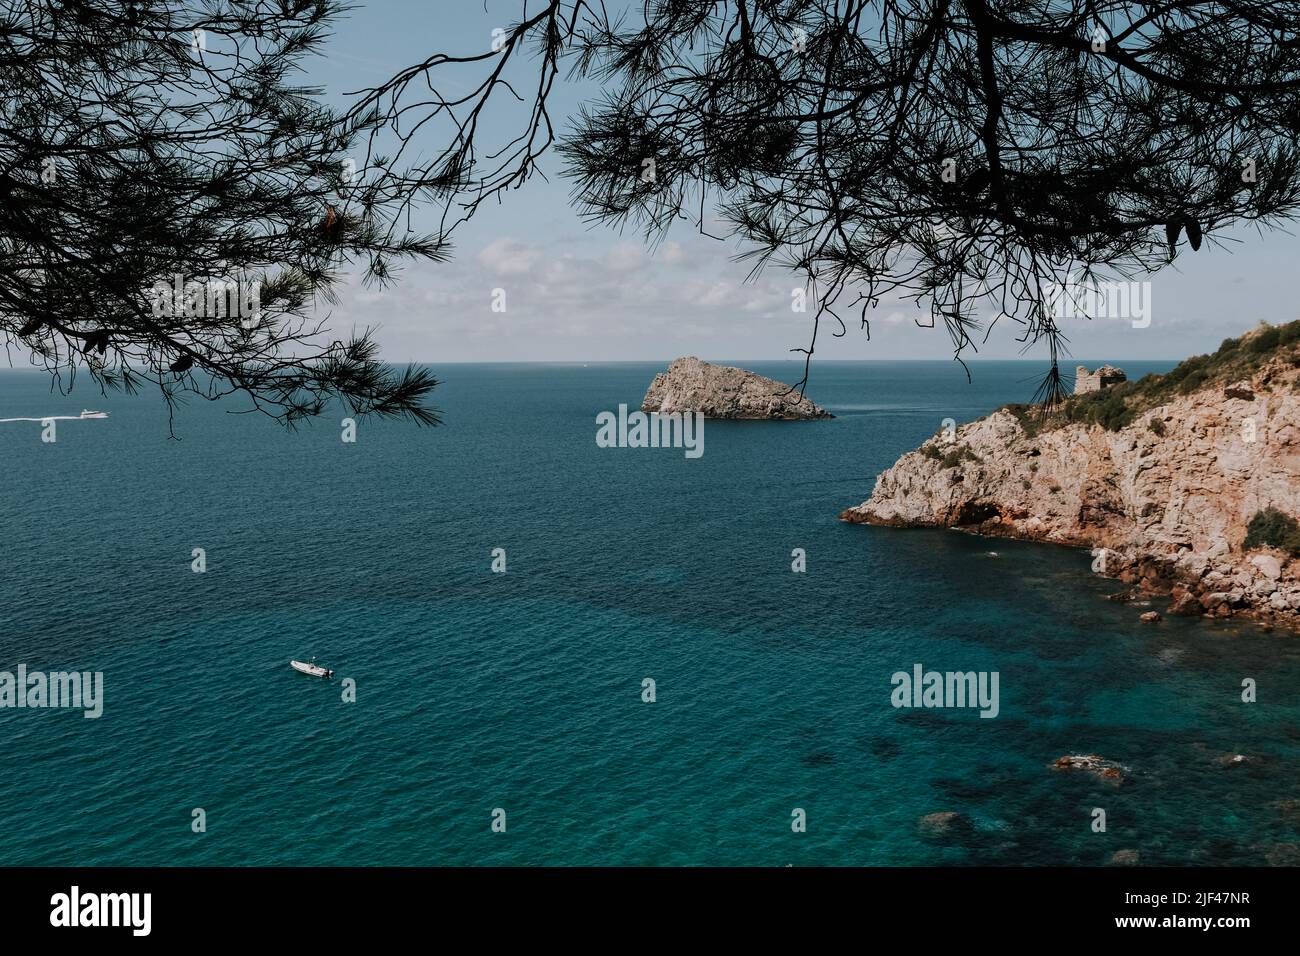 Eine Küste in Italien. Türkis blaues Meer. Kleines Boot im Wasser Stock Photo